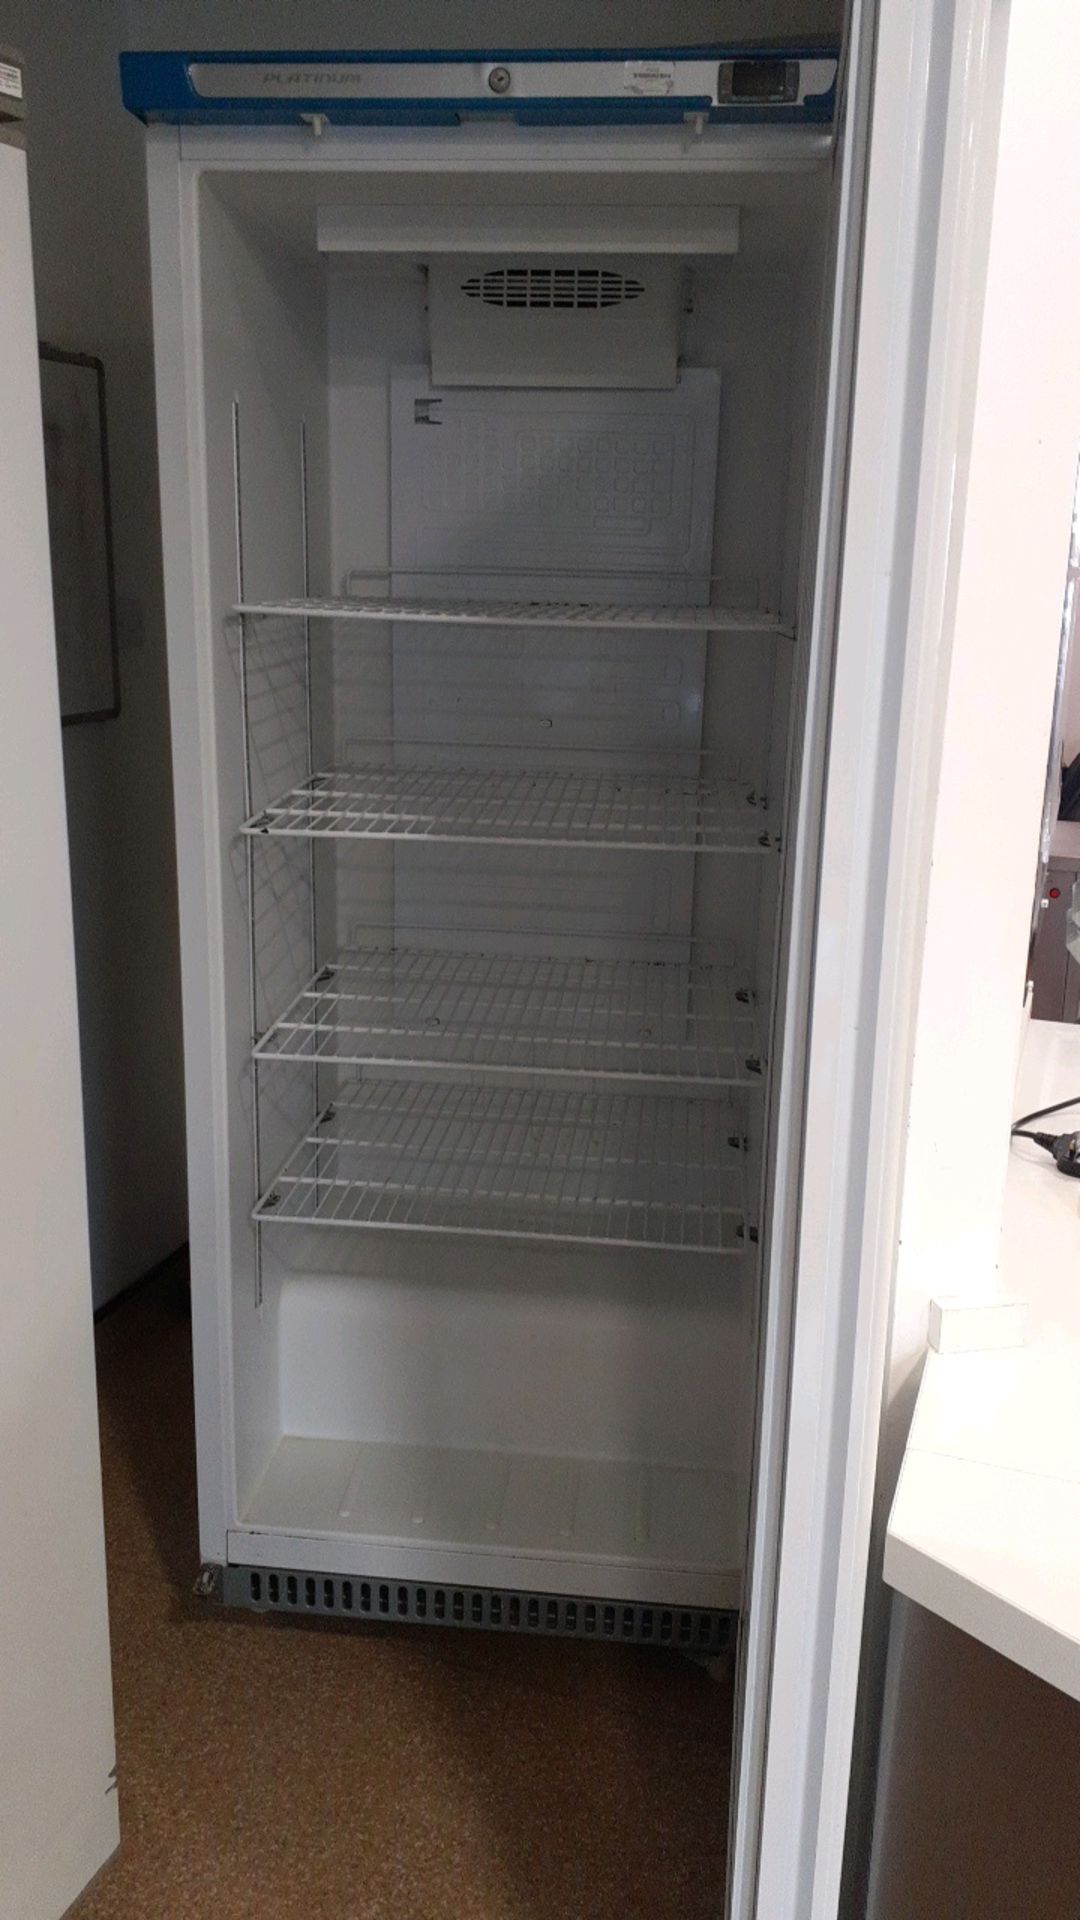 Upright fridge - Image 2 of 3